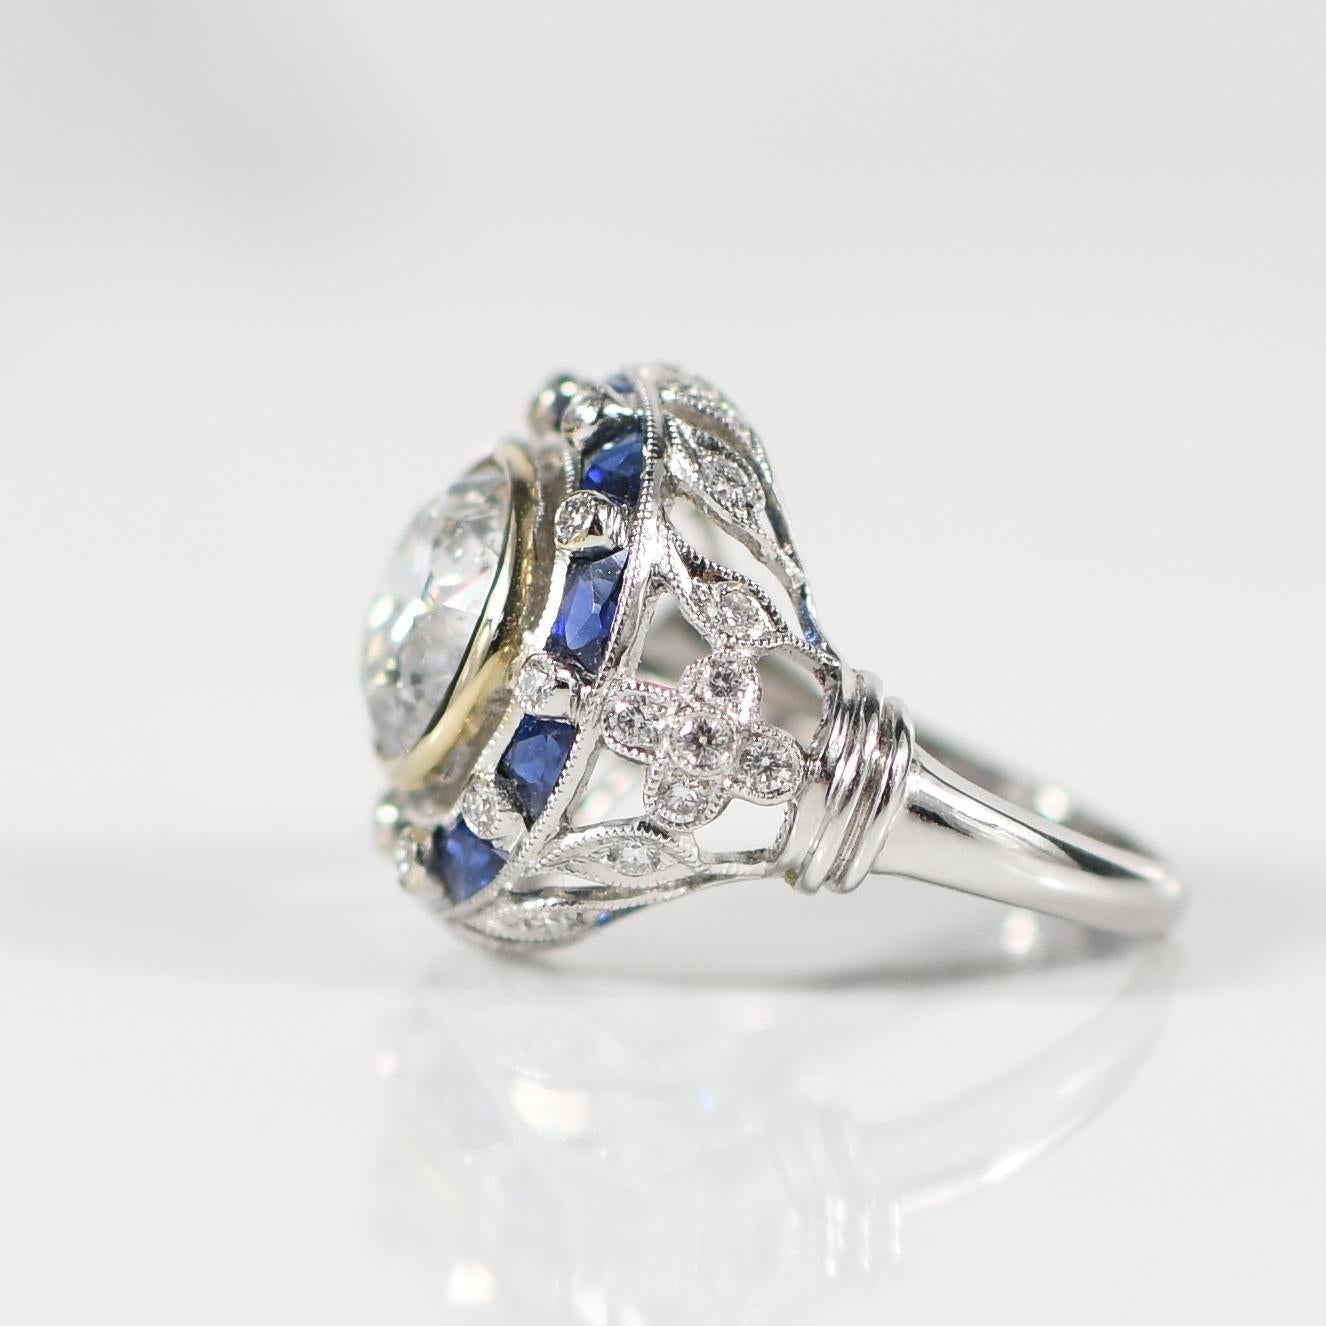 Tauchen Sie ein in den Glamour der Art-Déco-Ära mit diesem bezaubernden Verlobungsring, in dessen Mittelpunkt ein atemberaubender Diamant im alten europäischen Schliff mit 3,52 Karat steht. Umgeben von einem Halo aus leuchtenden Saphiren von